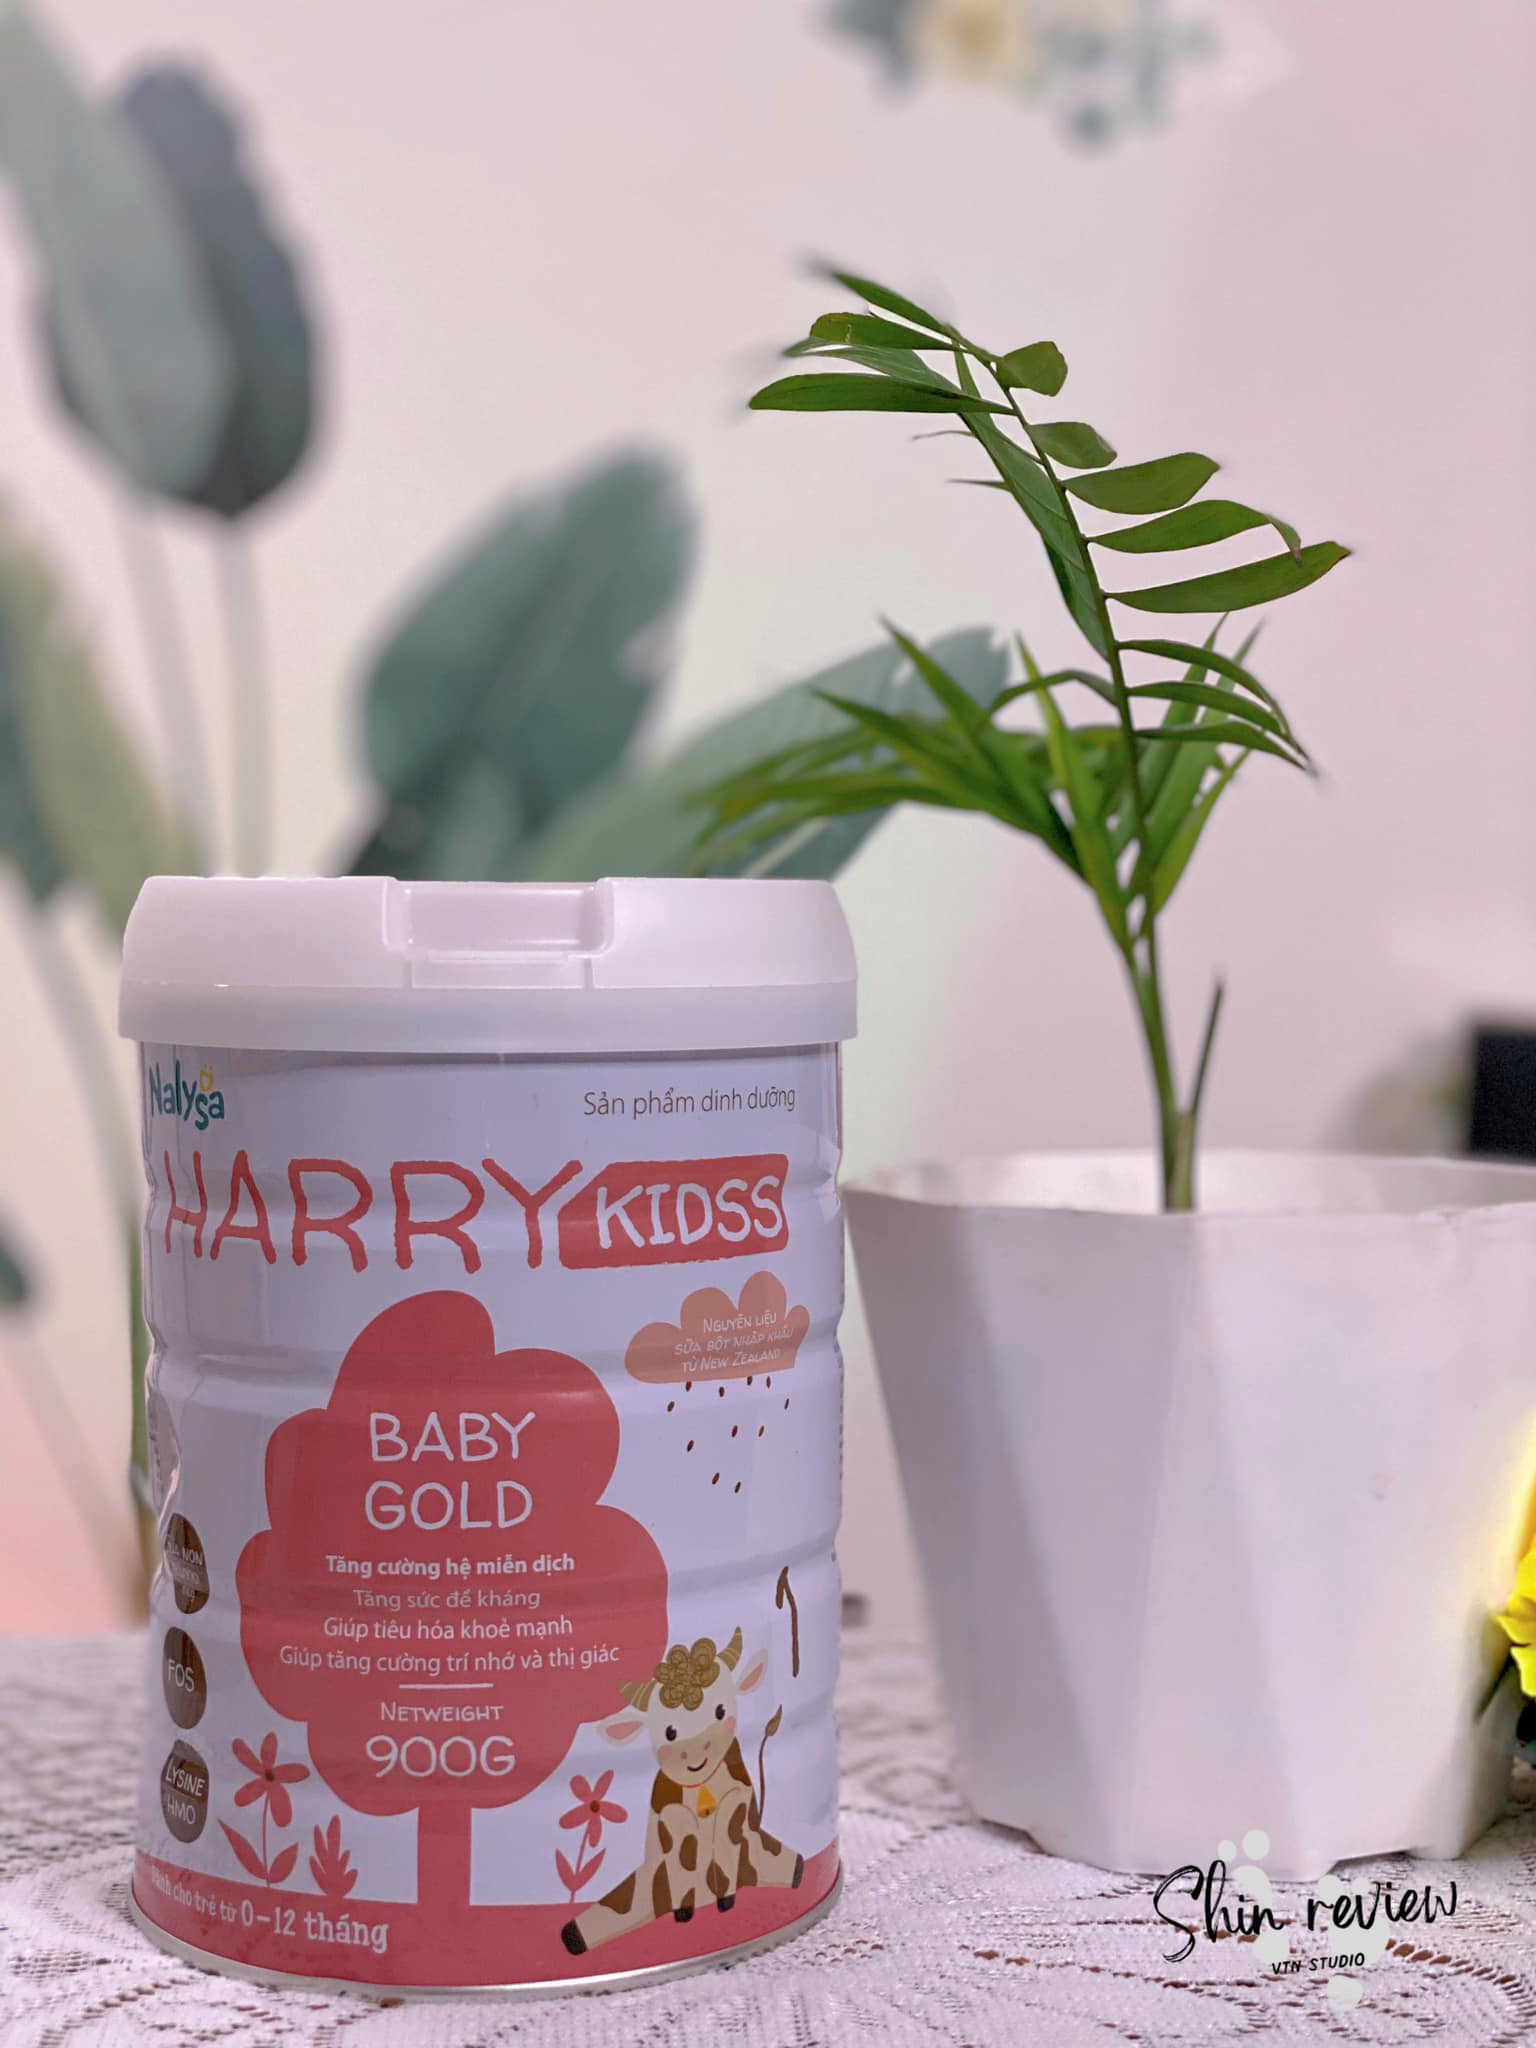 Sữa Harry kidss Baby Gold 900g dành cho bé từ 0 đến 12 tháng